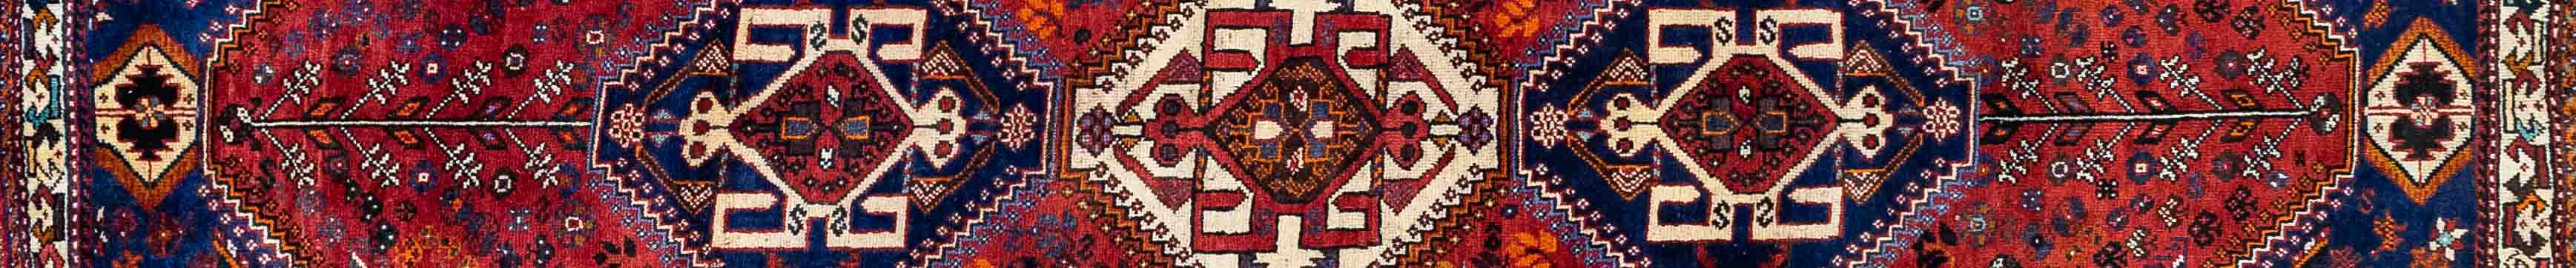 Shiraz Persian Carpet Rug N1Carpet Canada Montreal Tapis Persan 1950